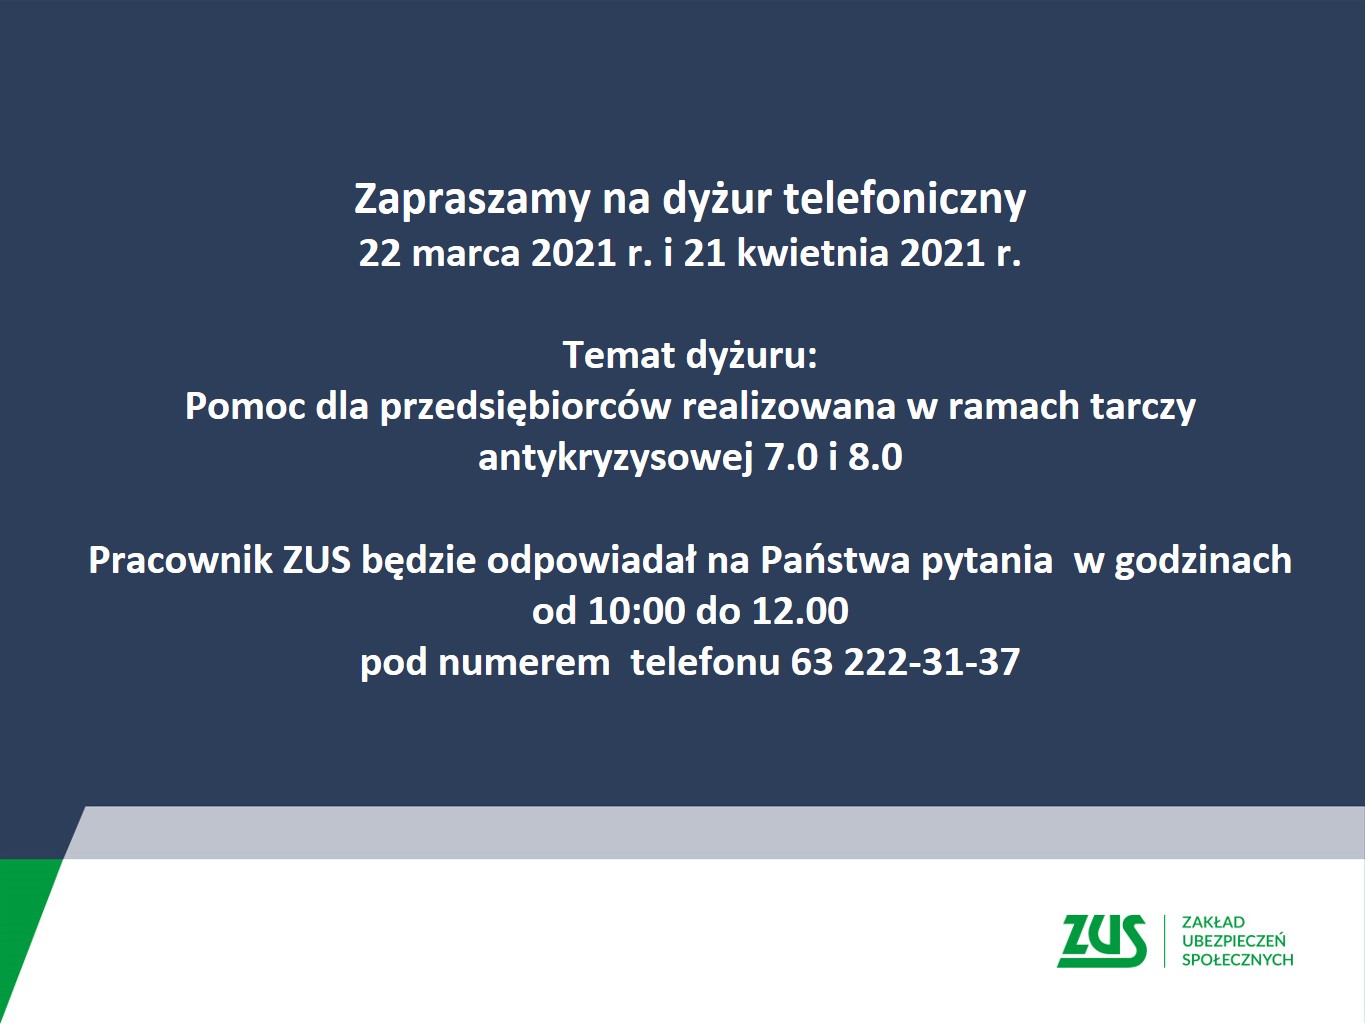 ZUS - 22 marca i 21 kwietnia organizuje dyżur telefoniczny